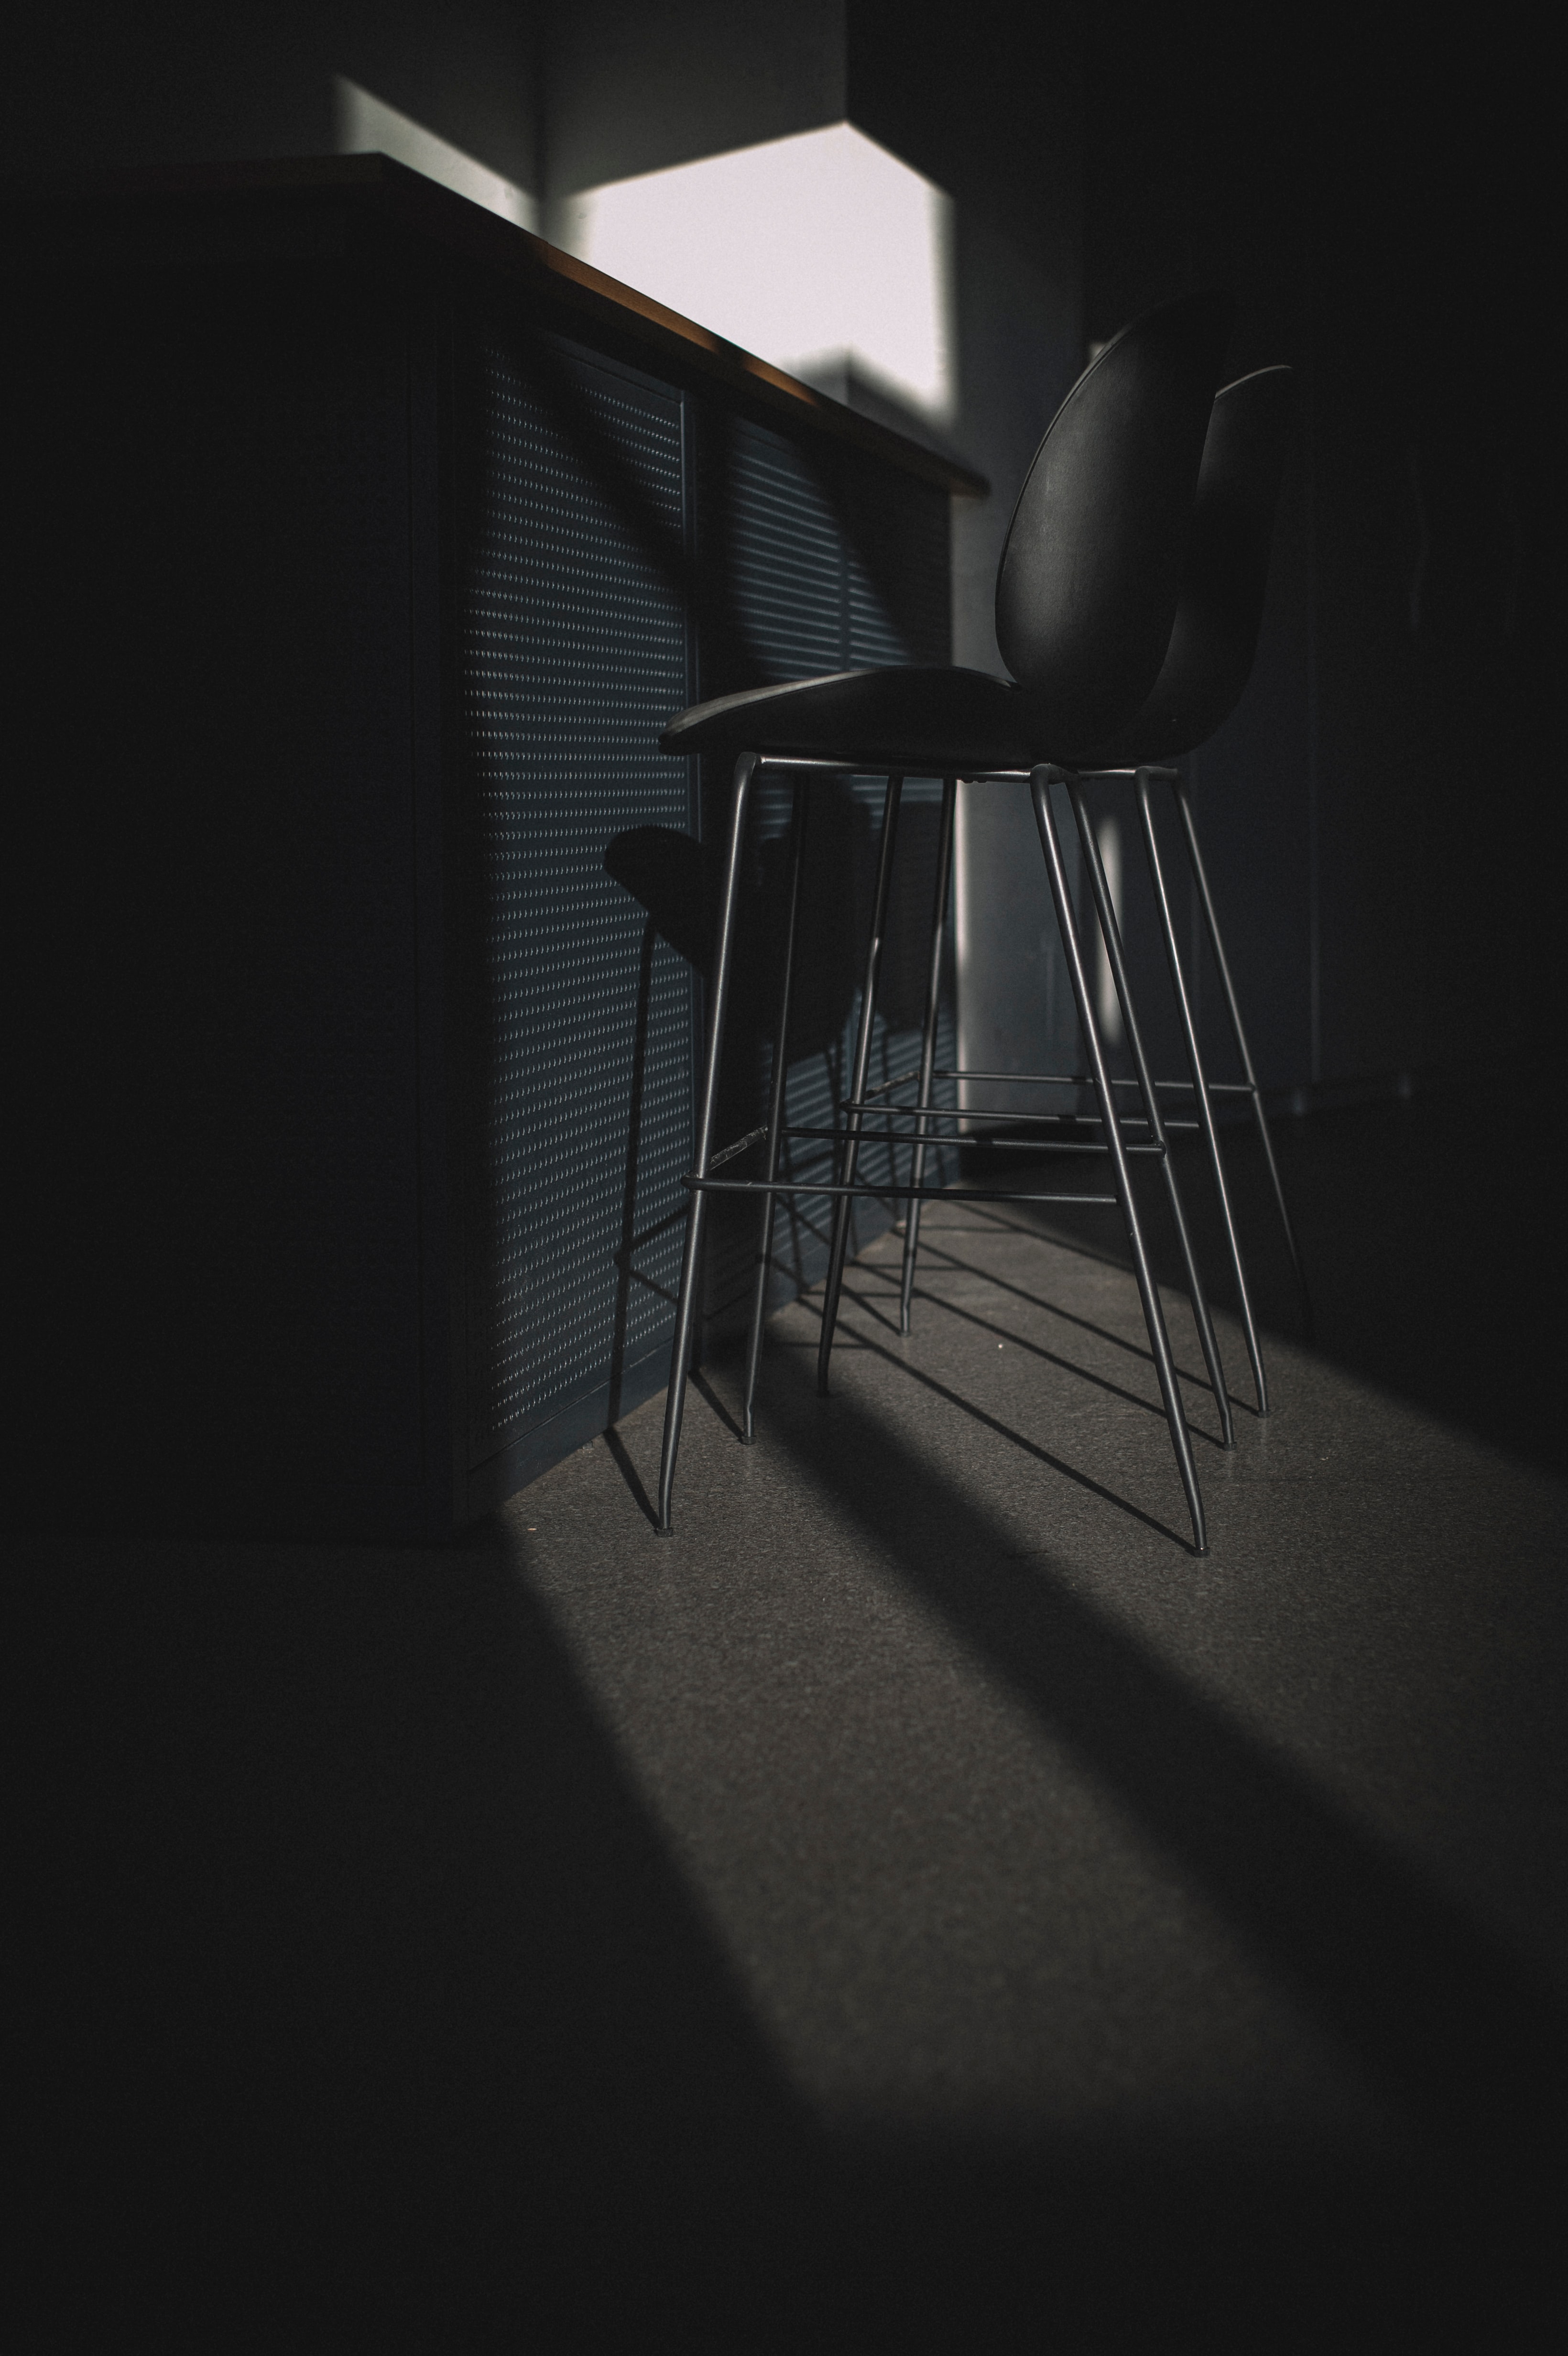 dark, shine, light, chairs, rack